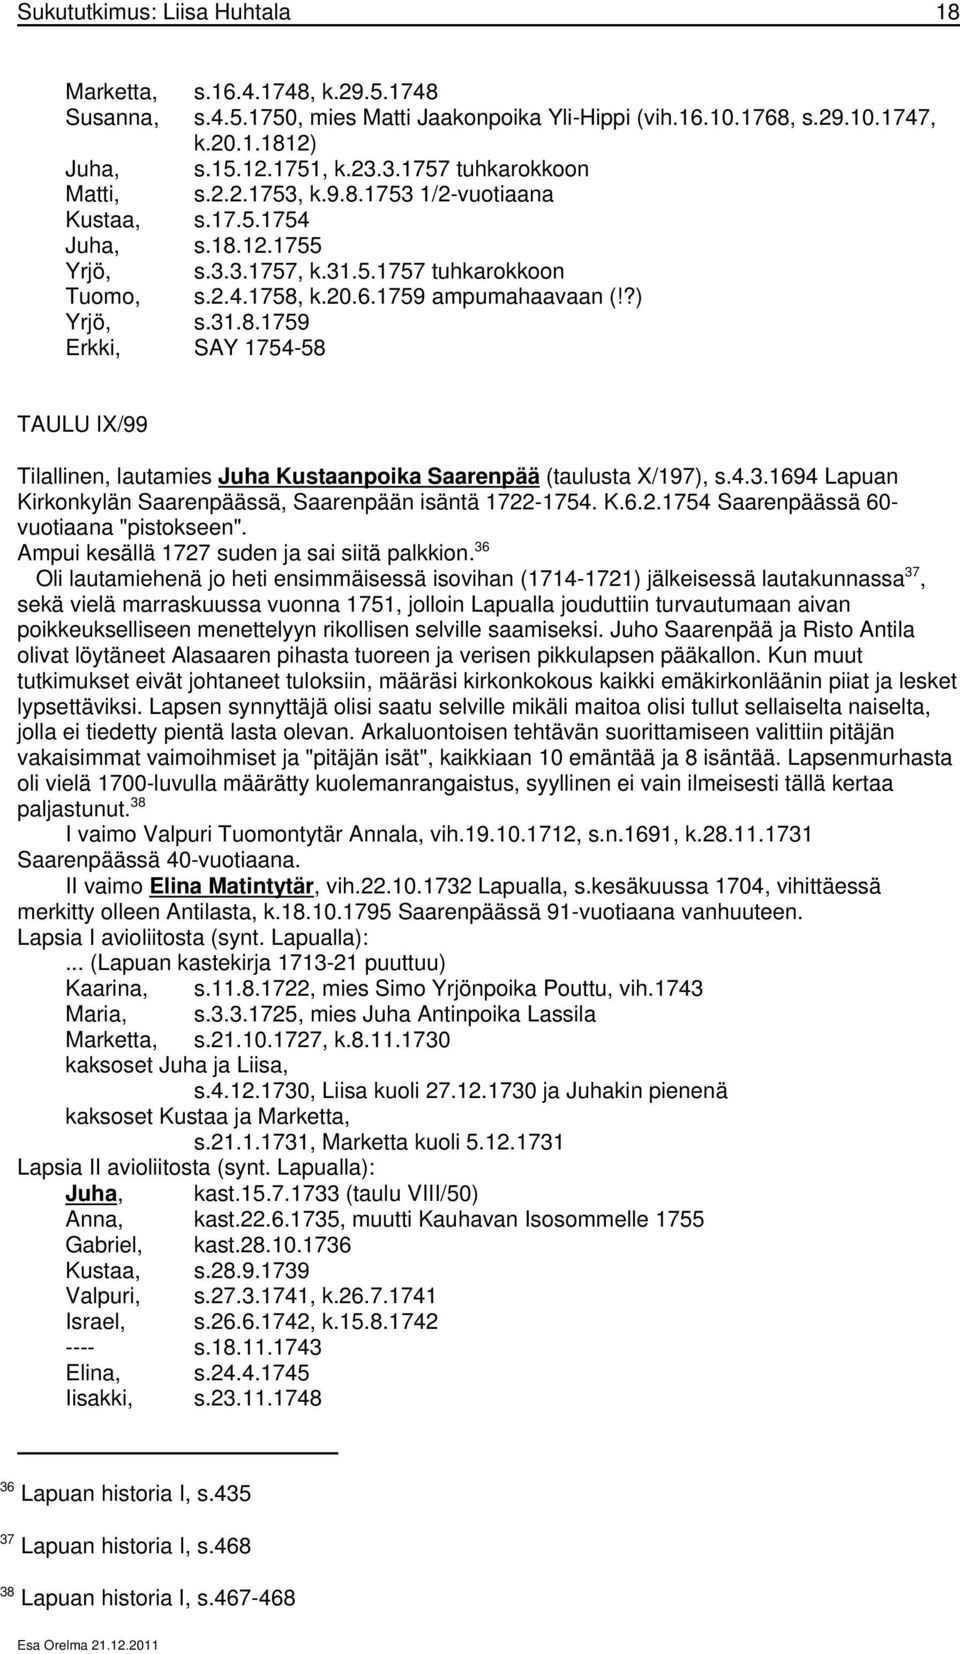 ?) Yrjö, s.31.8.1759 Erkki, SAY 1754-58 TAULU IX/99 Tilallinen, lautamies Juha Kustaanpoika Saarenpää (taulusta X/197), s.4.3.1694 Lapuan Kirkonkylän Saarenpäässä, Saarenpään isäntä 1722